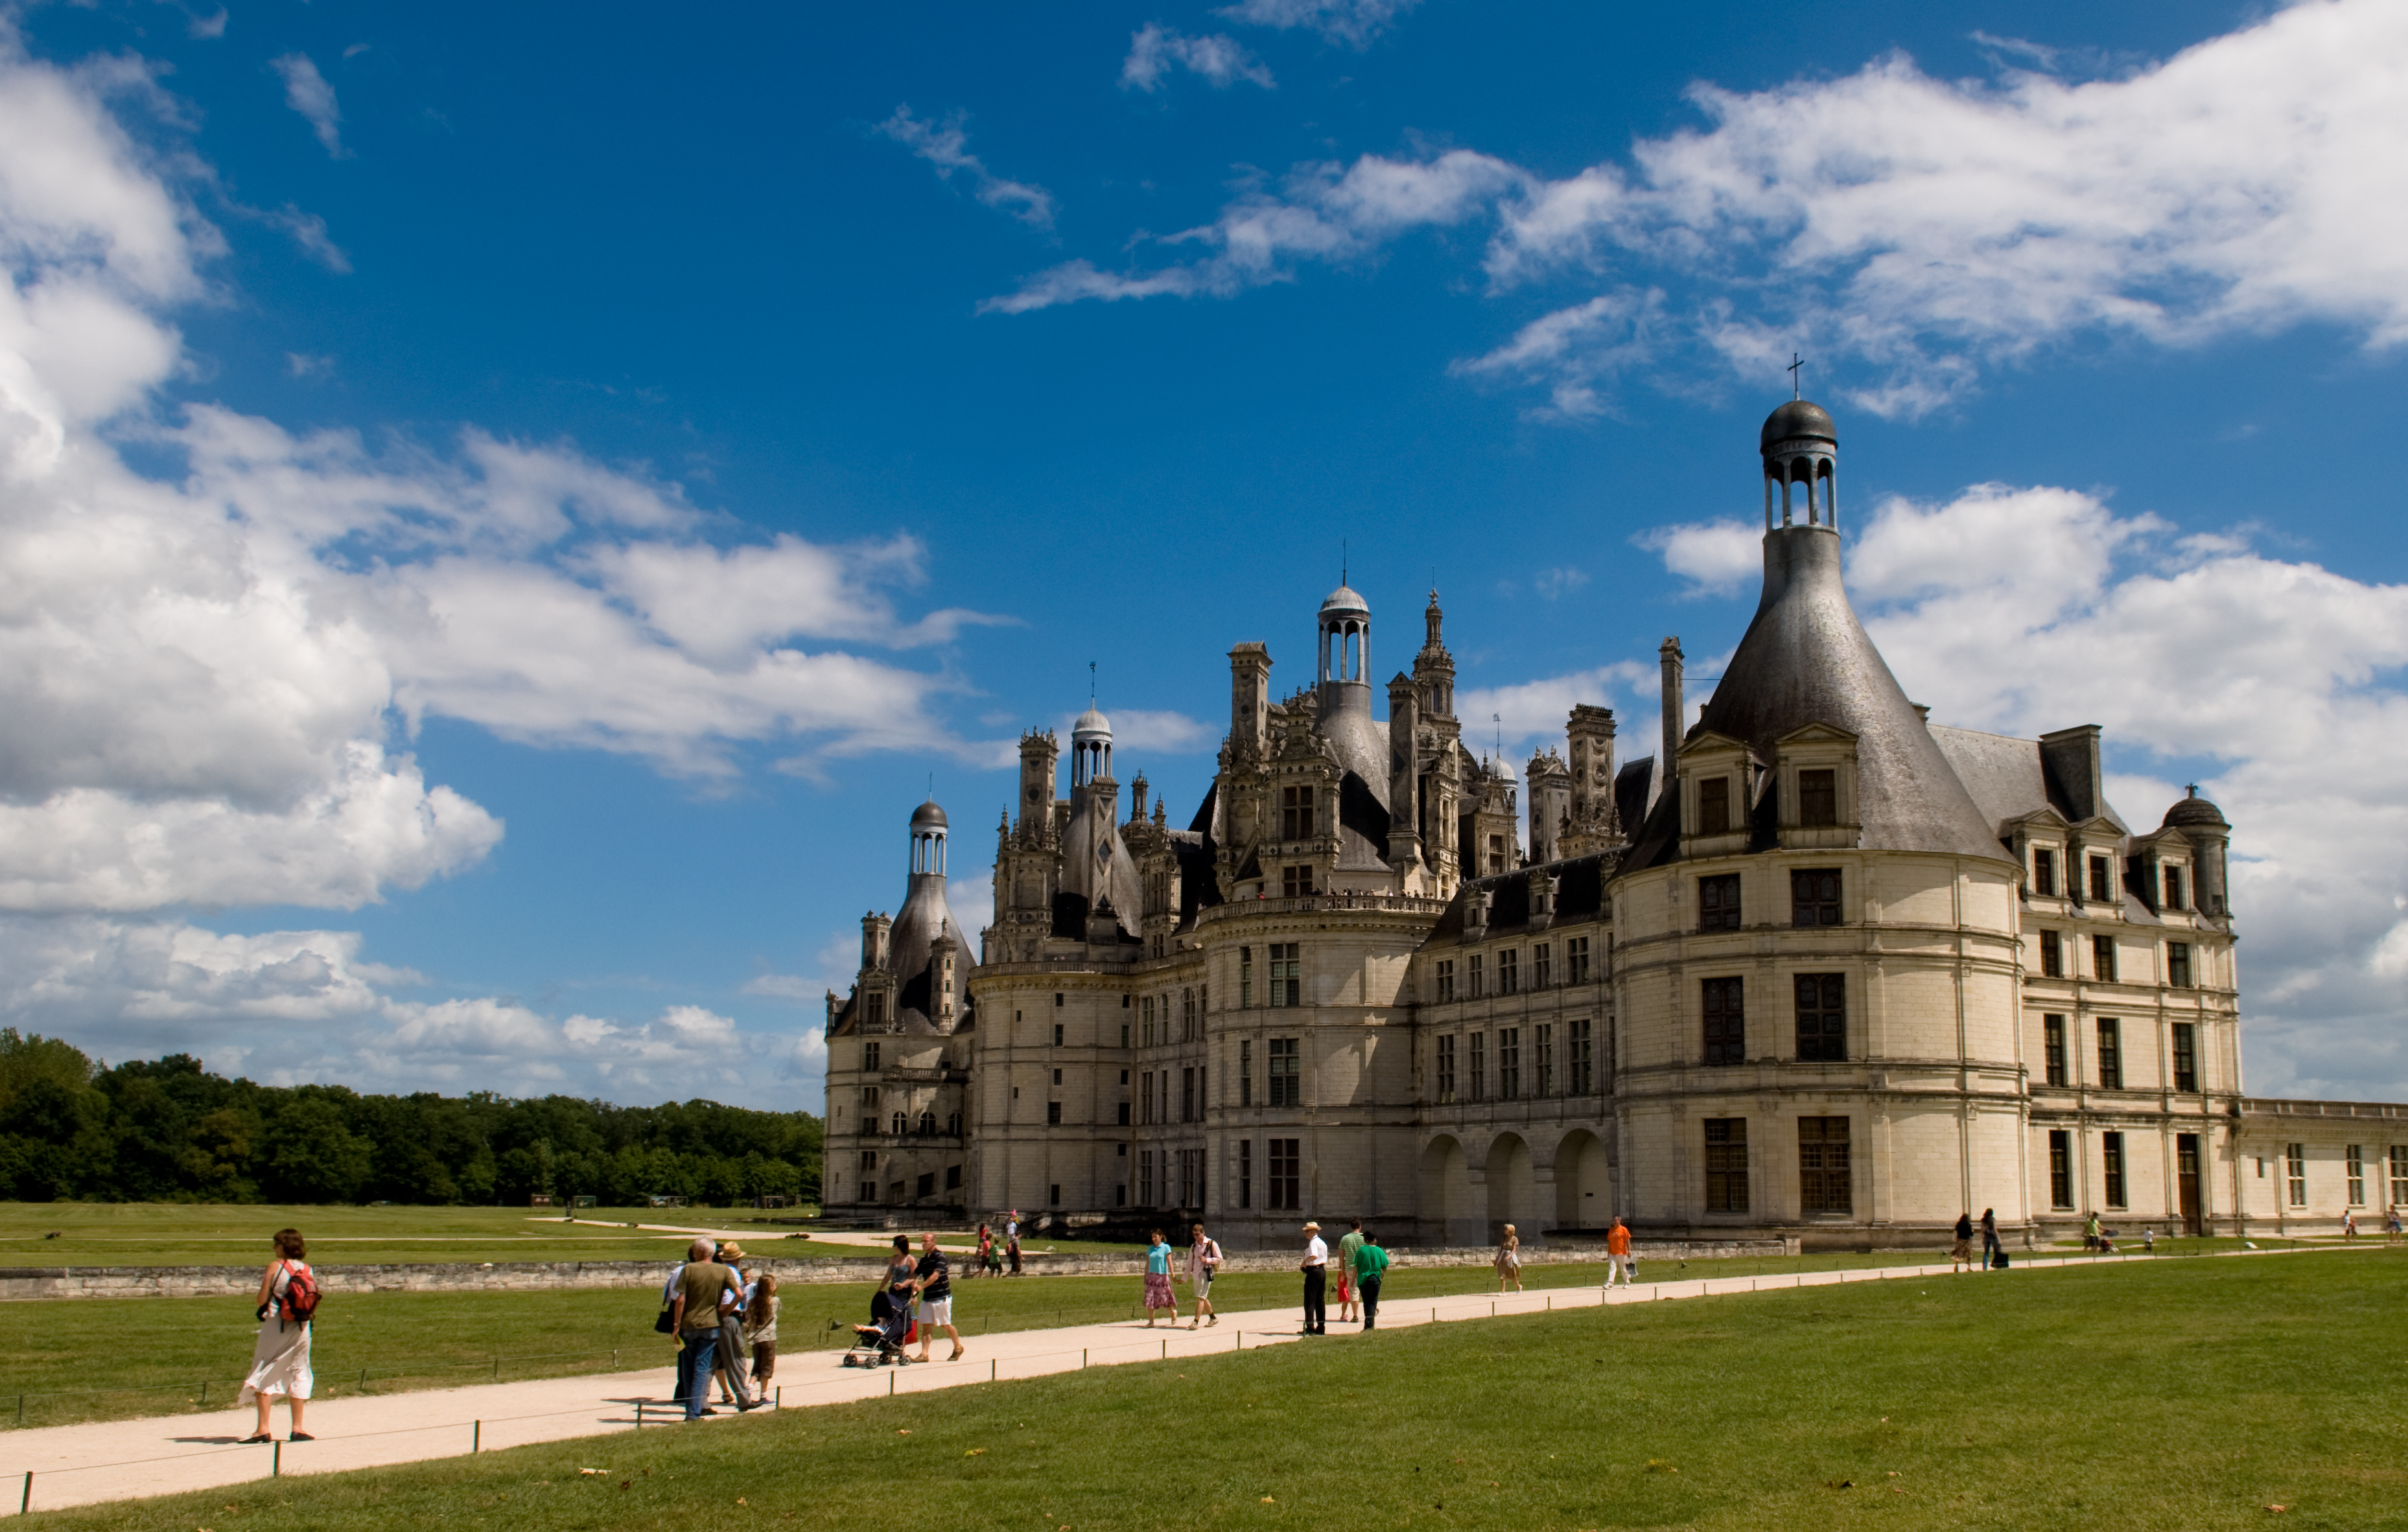 Château De Chambord Backgrounds, Compatible - PC, Mobile, Gadgets| 3715x2364 px